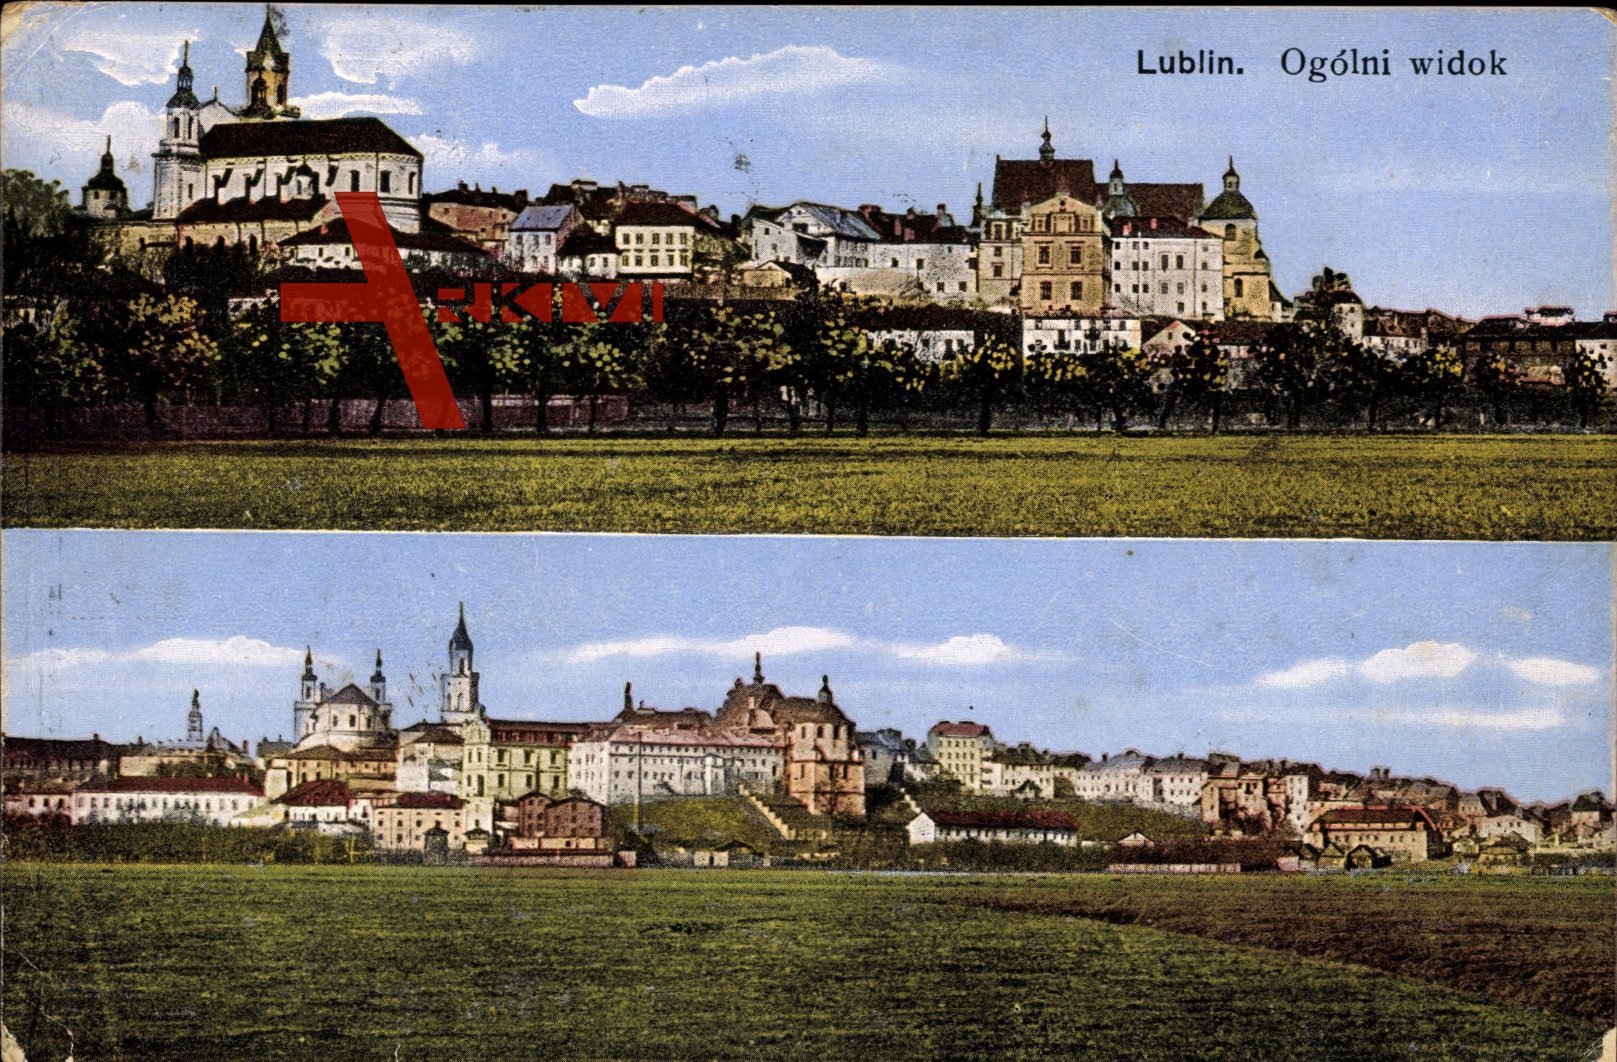 Lublin Polen, Ogólny widok, Gesamtansicht der Stadt